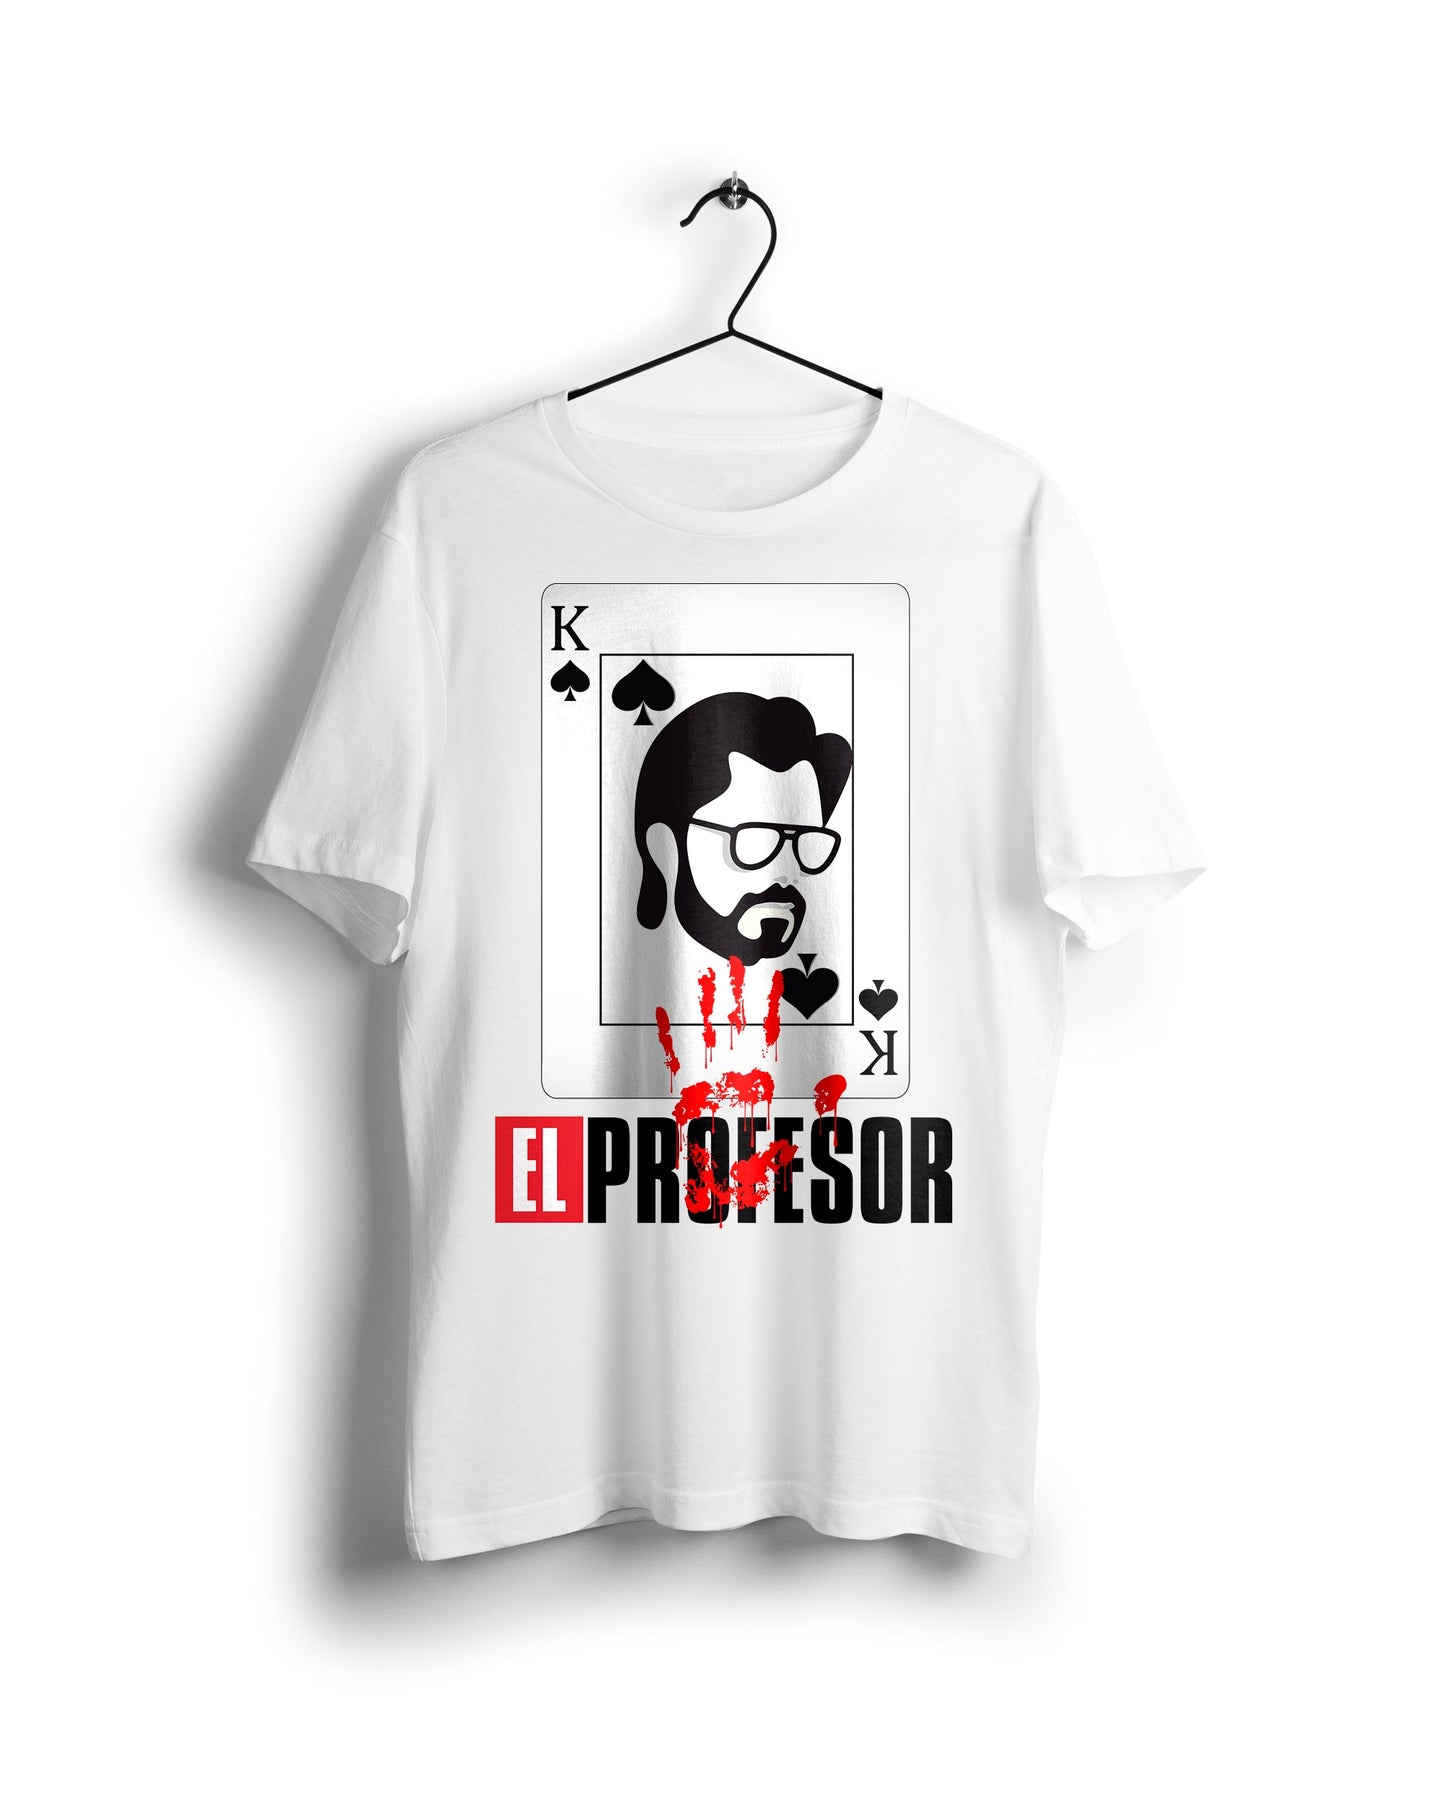 El Professor La Casa De Papel - Digital Graphics Basic T-shirt White - Ravin 